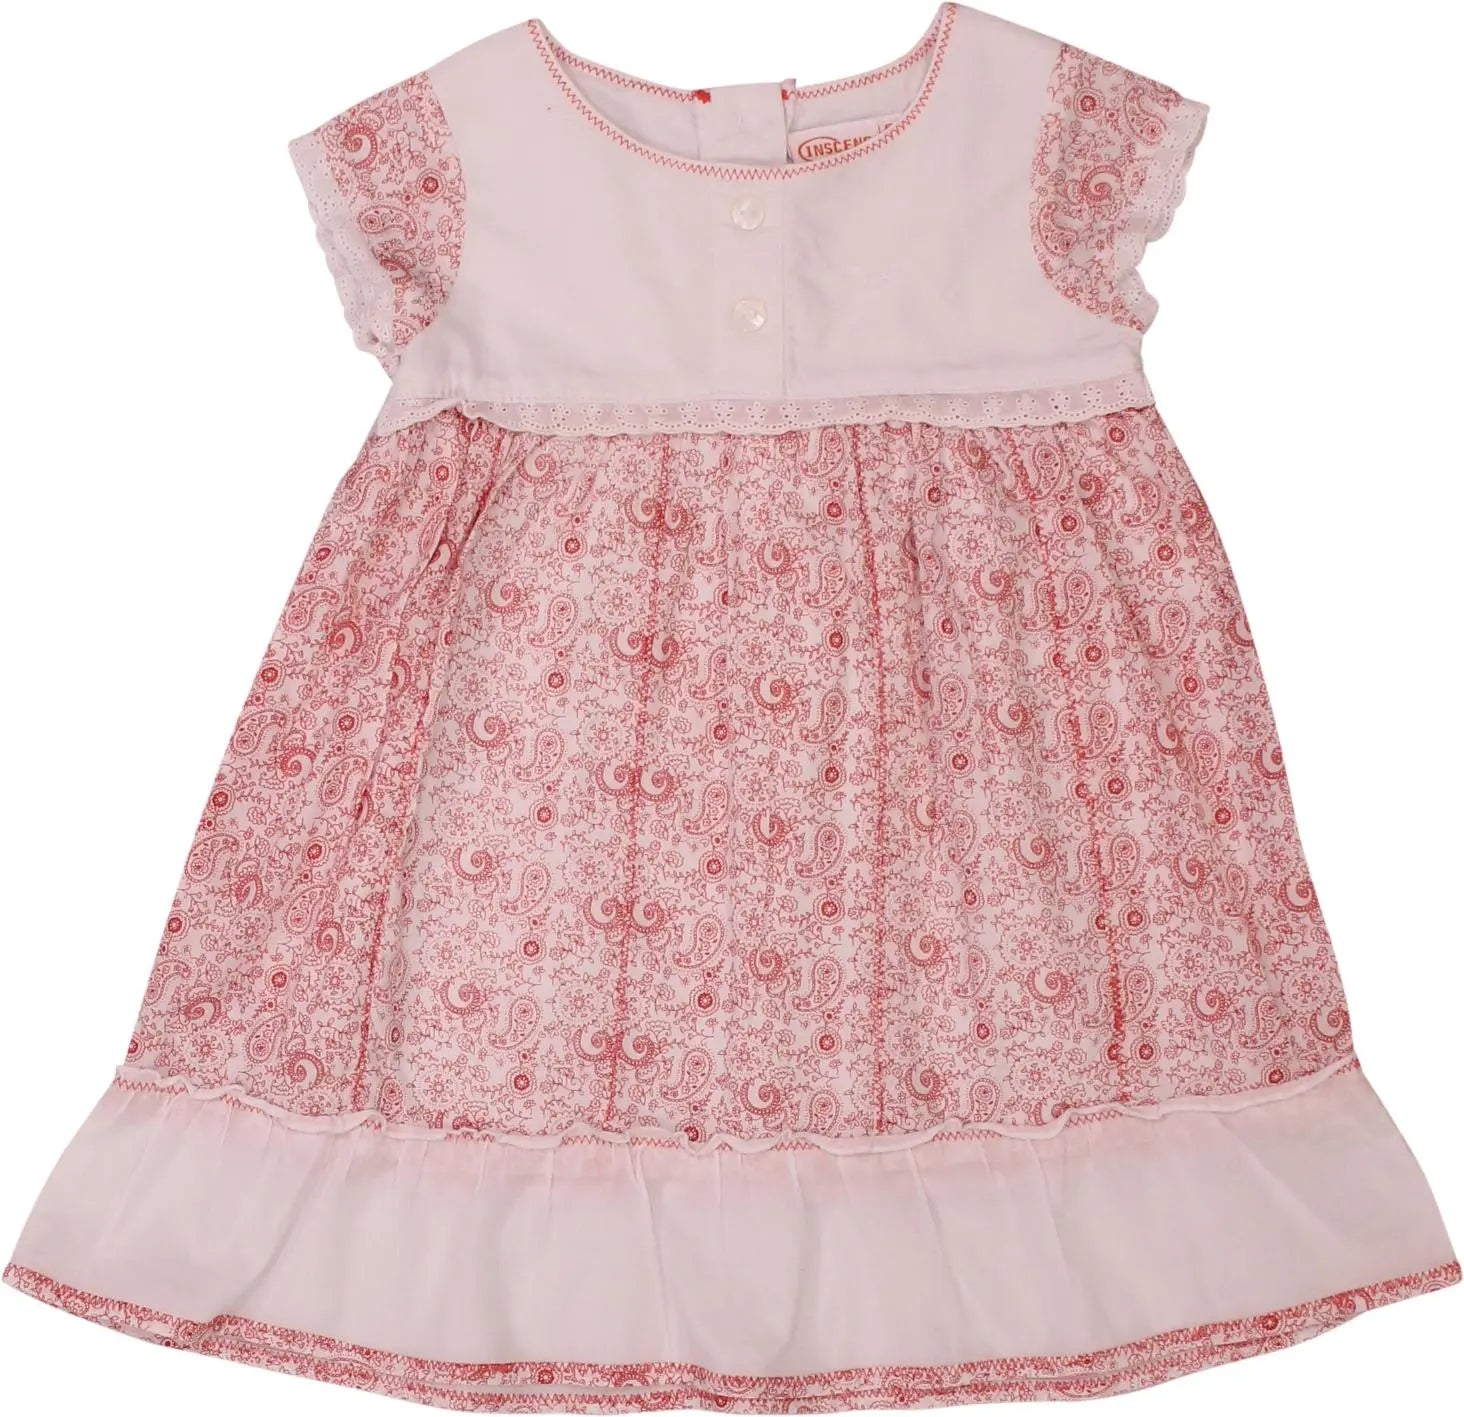 Inscene Babies - Vintage Dress- ThriftTale.com - Vintage and second handclothing